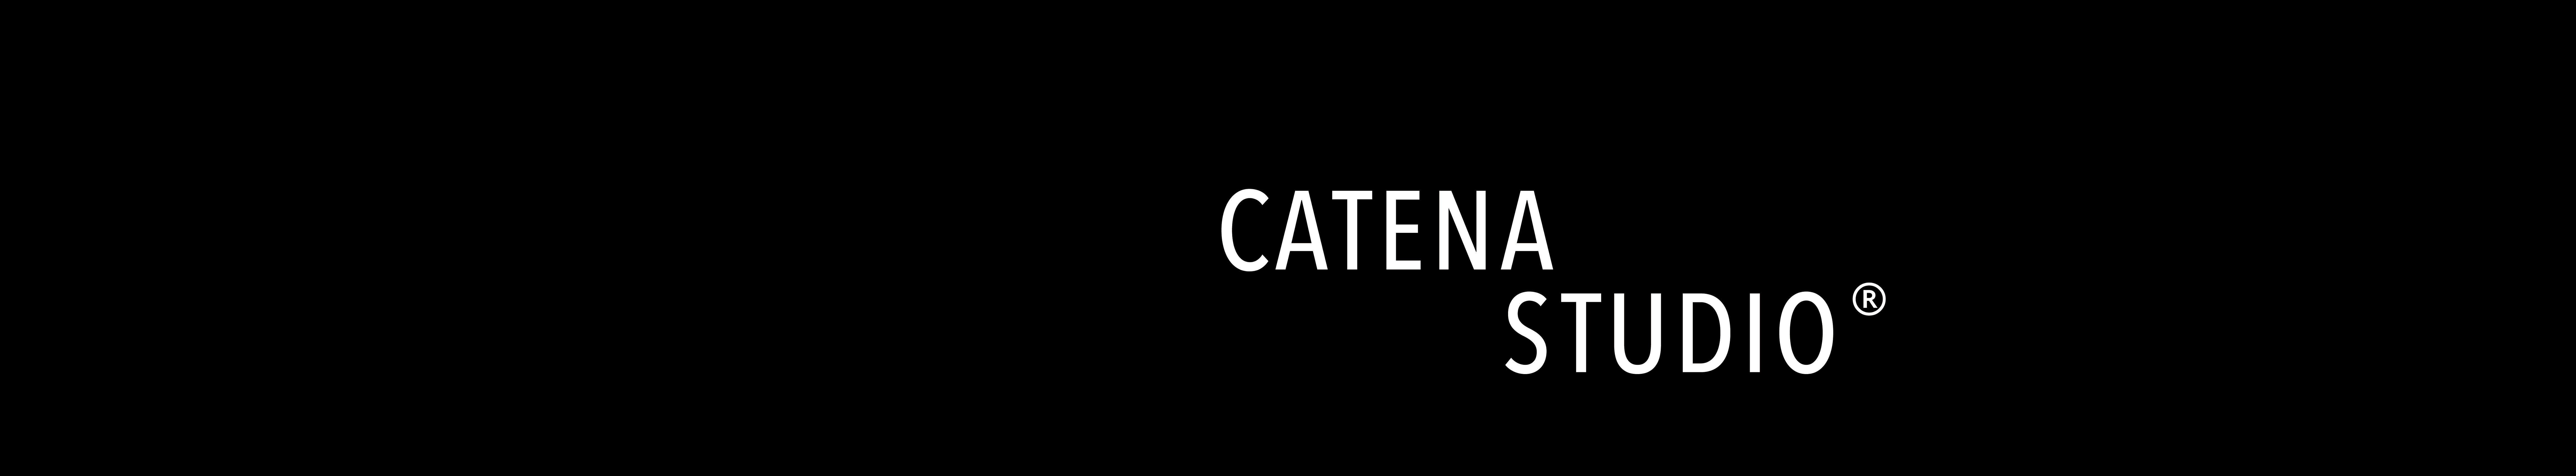 CATENA STUDIO 的個人檔案橫幅